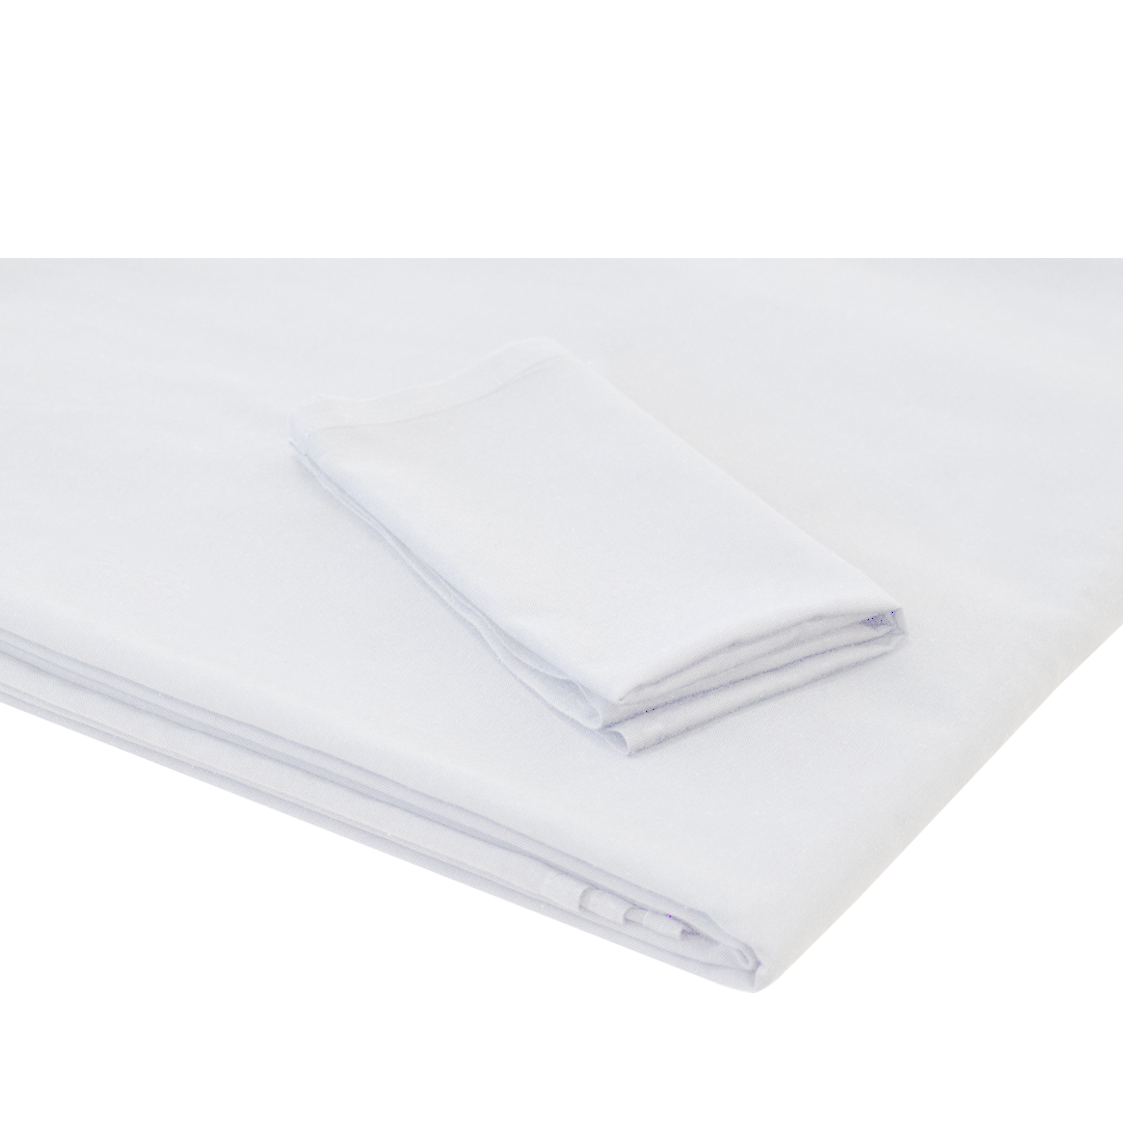 NAPKIN White Linen (packs of 10)